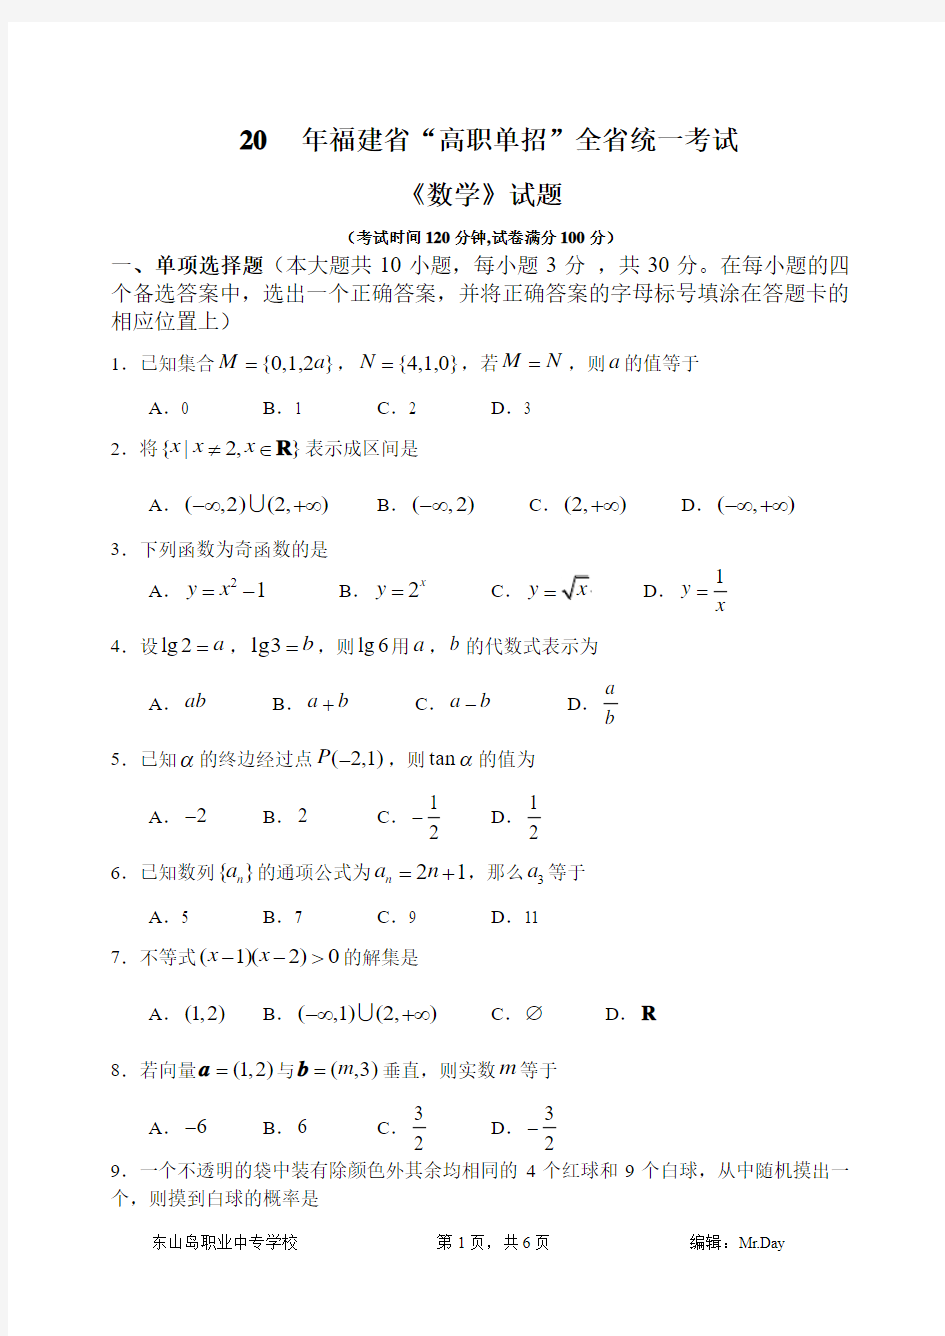 2012年福建省高职单招考试《数学》试题真题(含答案)